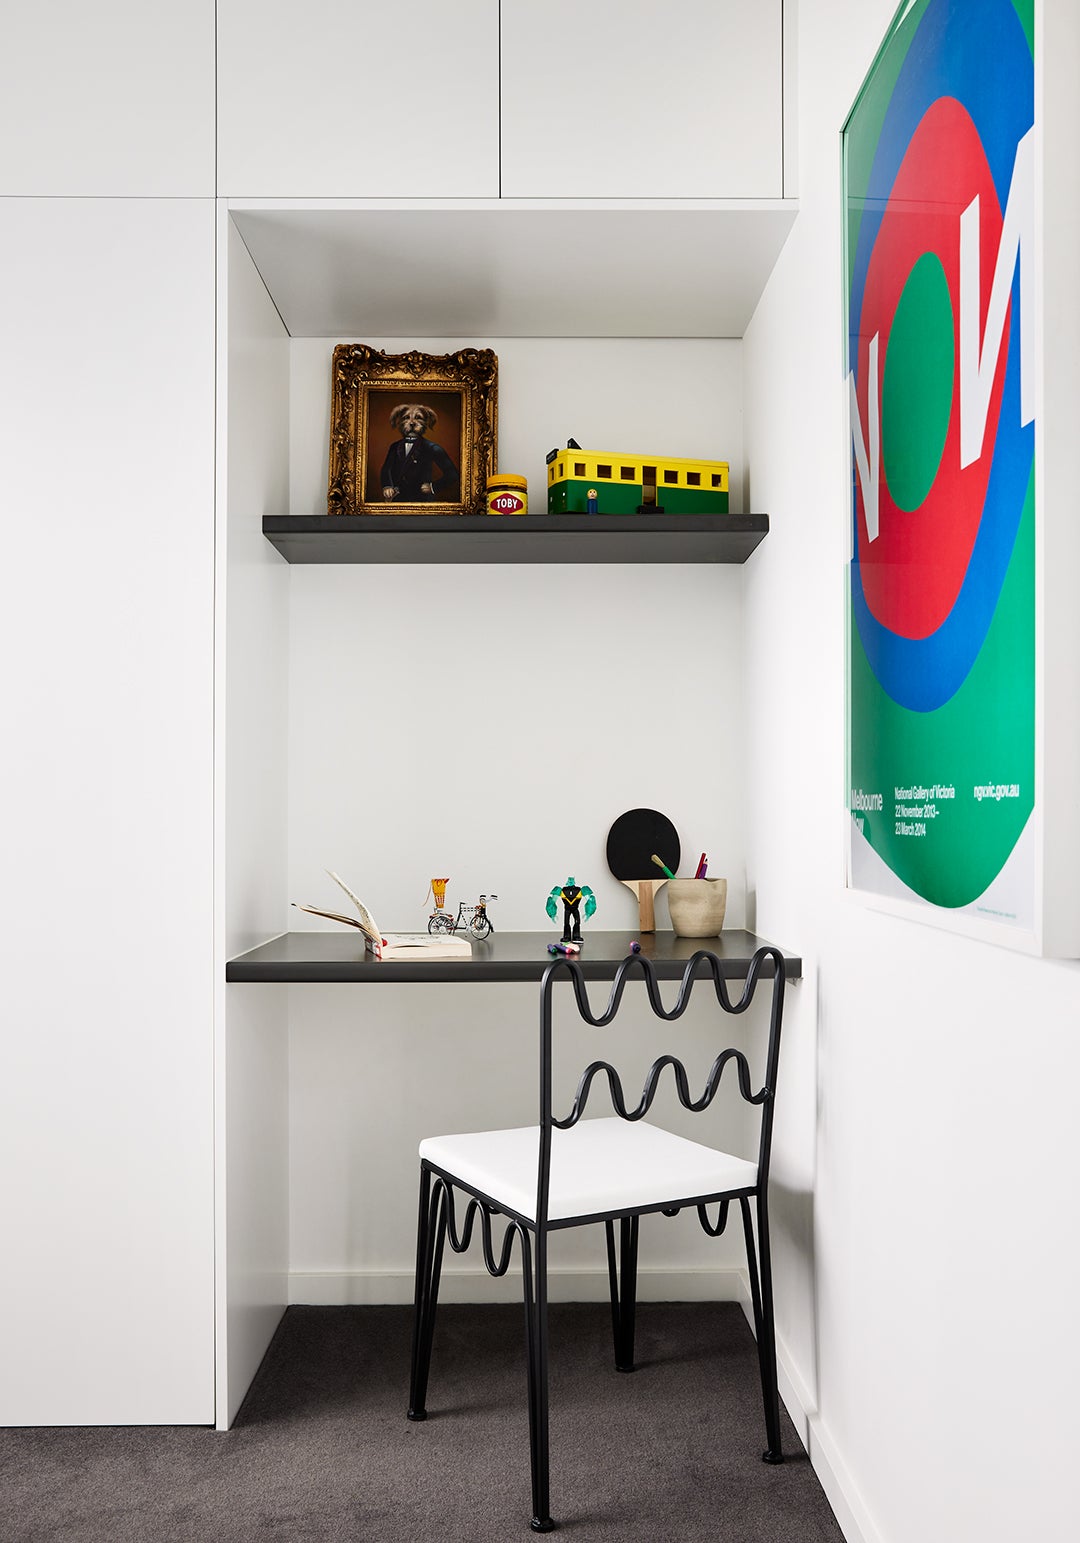 Rachel donath wave chair in front of black shelves in boy's bedroom 